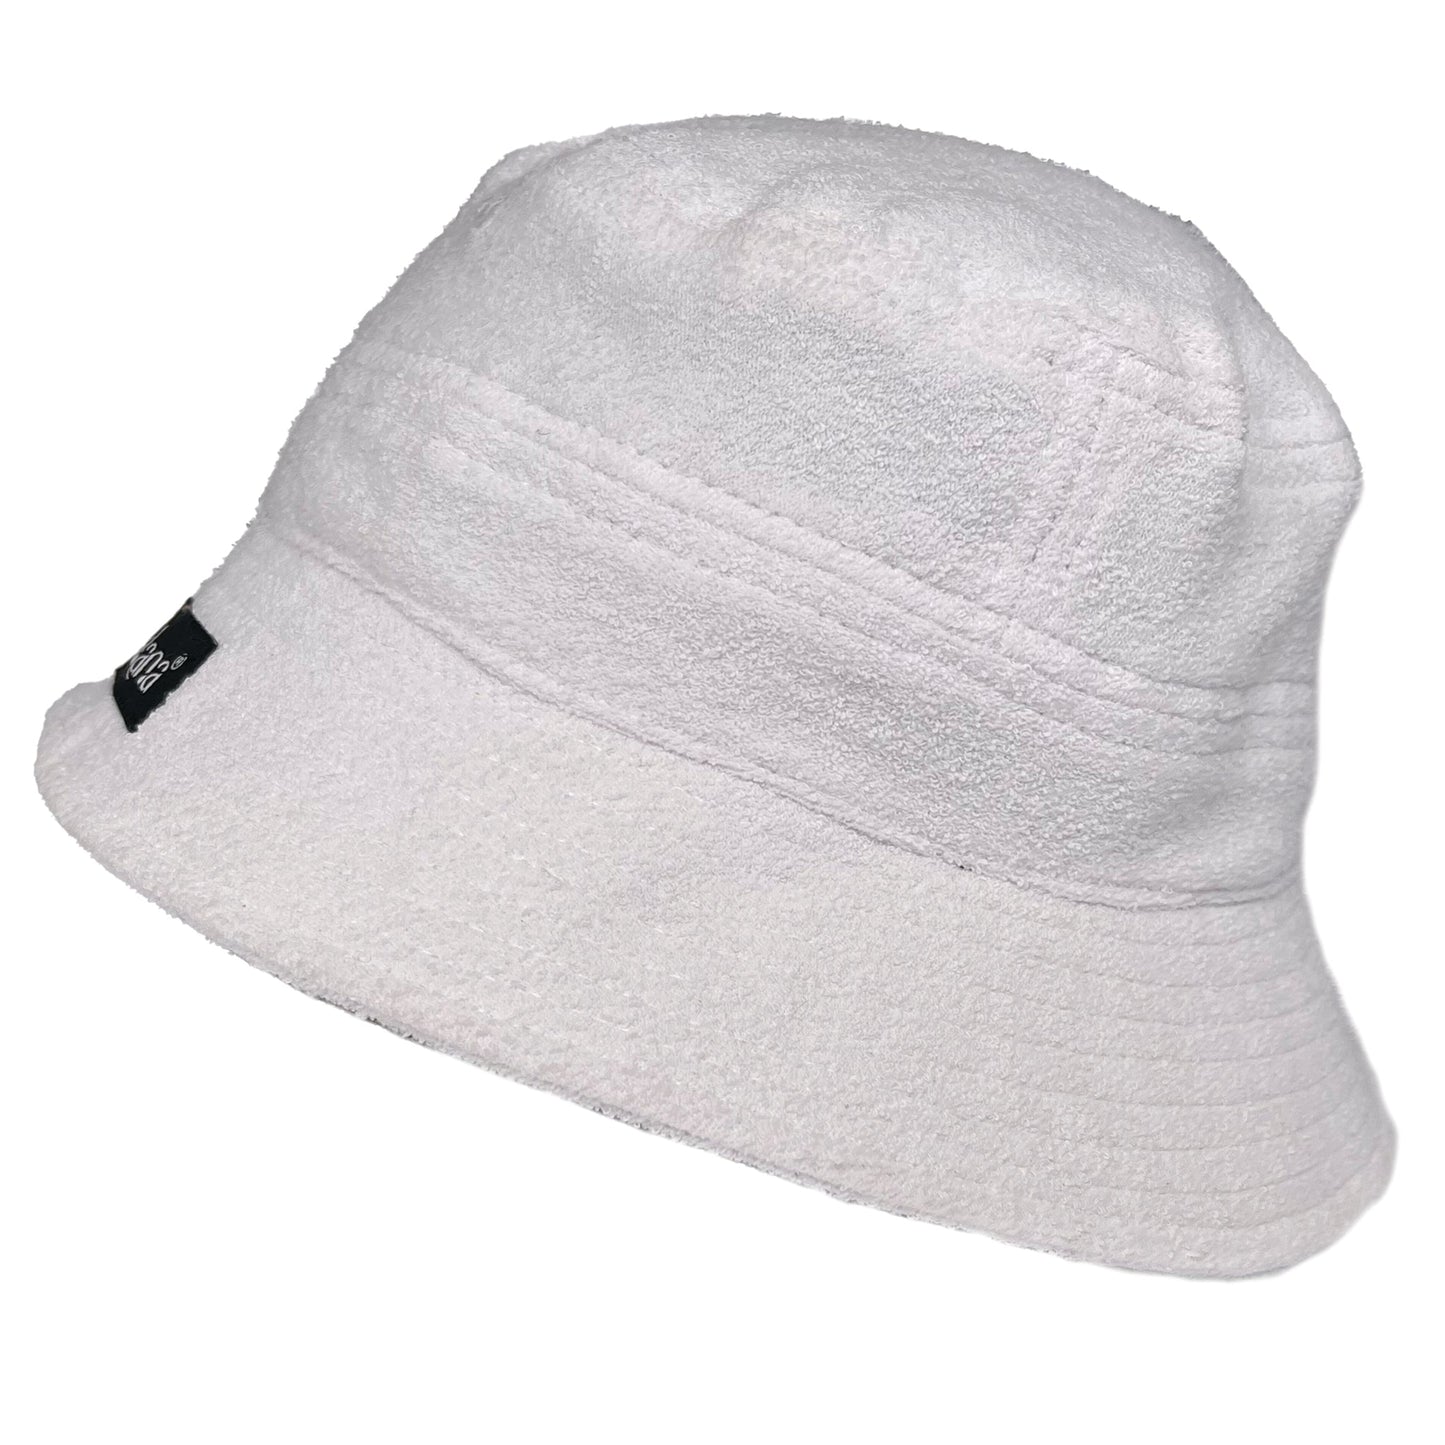 Towel bucket hats